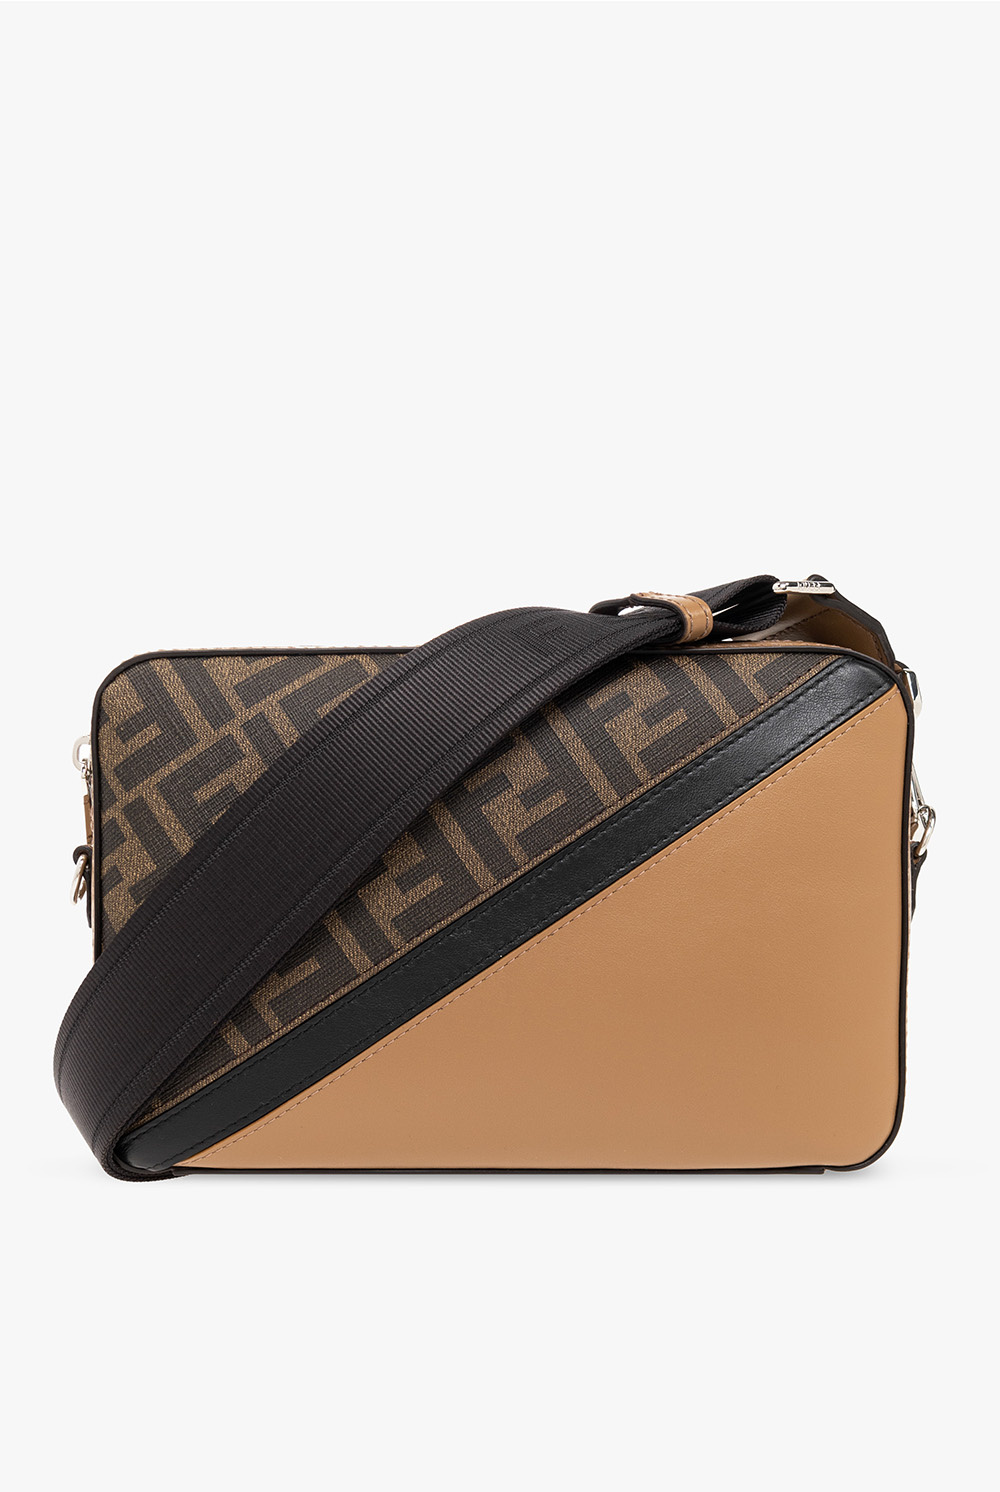 Fendi Shoulder bag with monogram